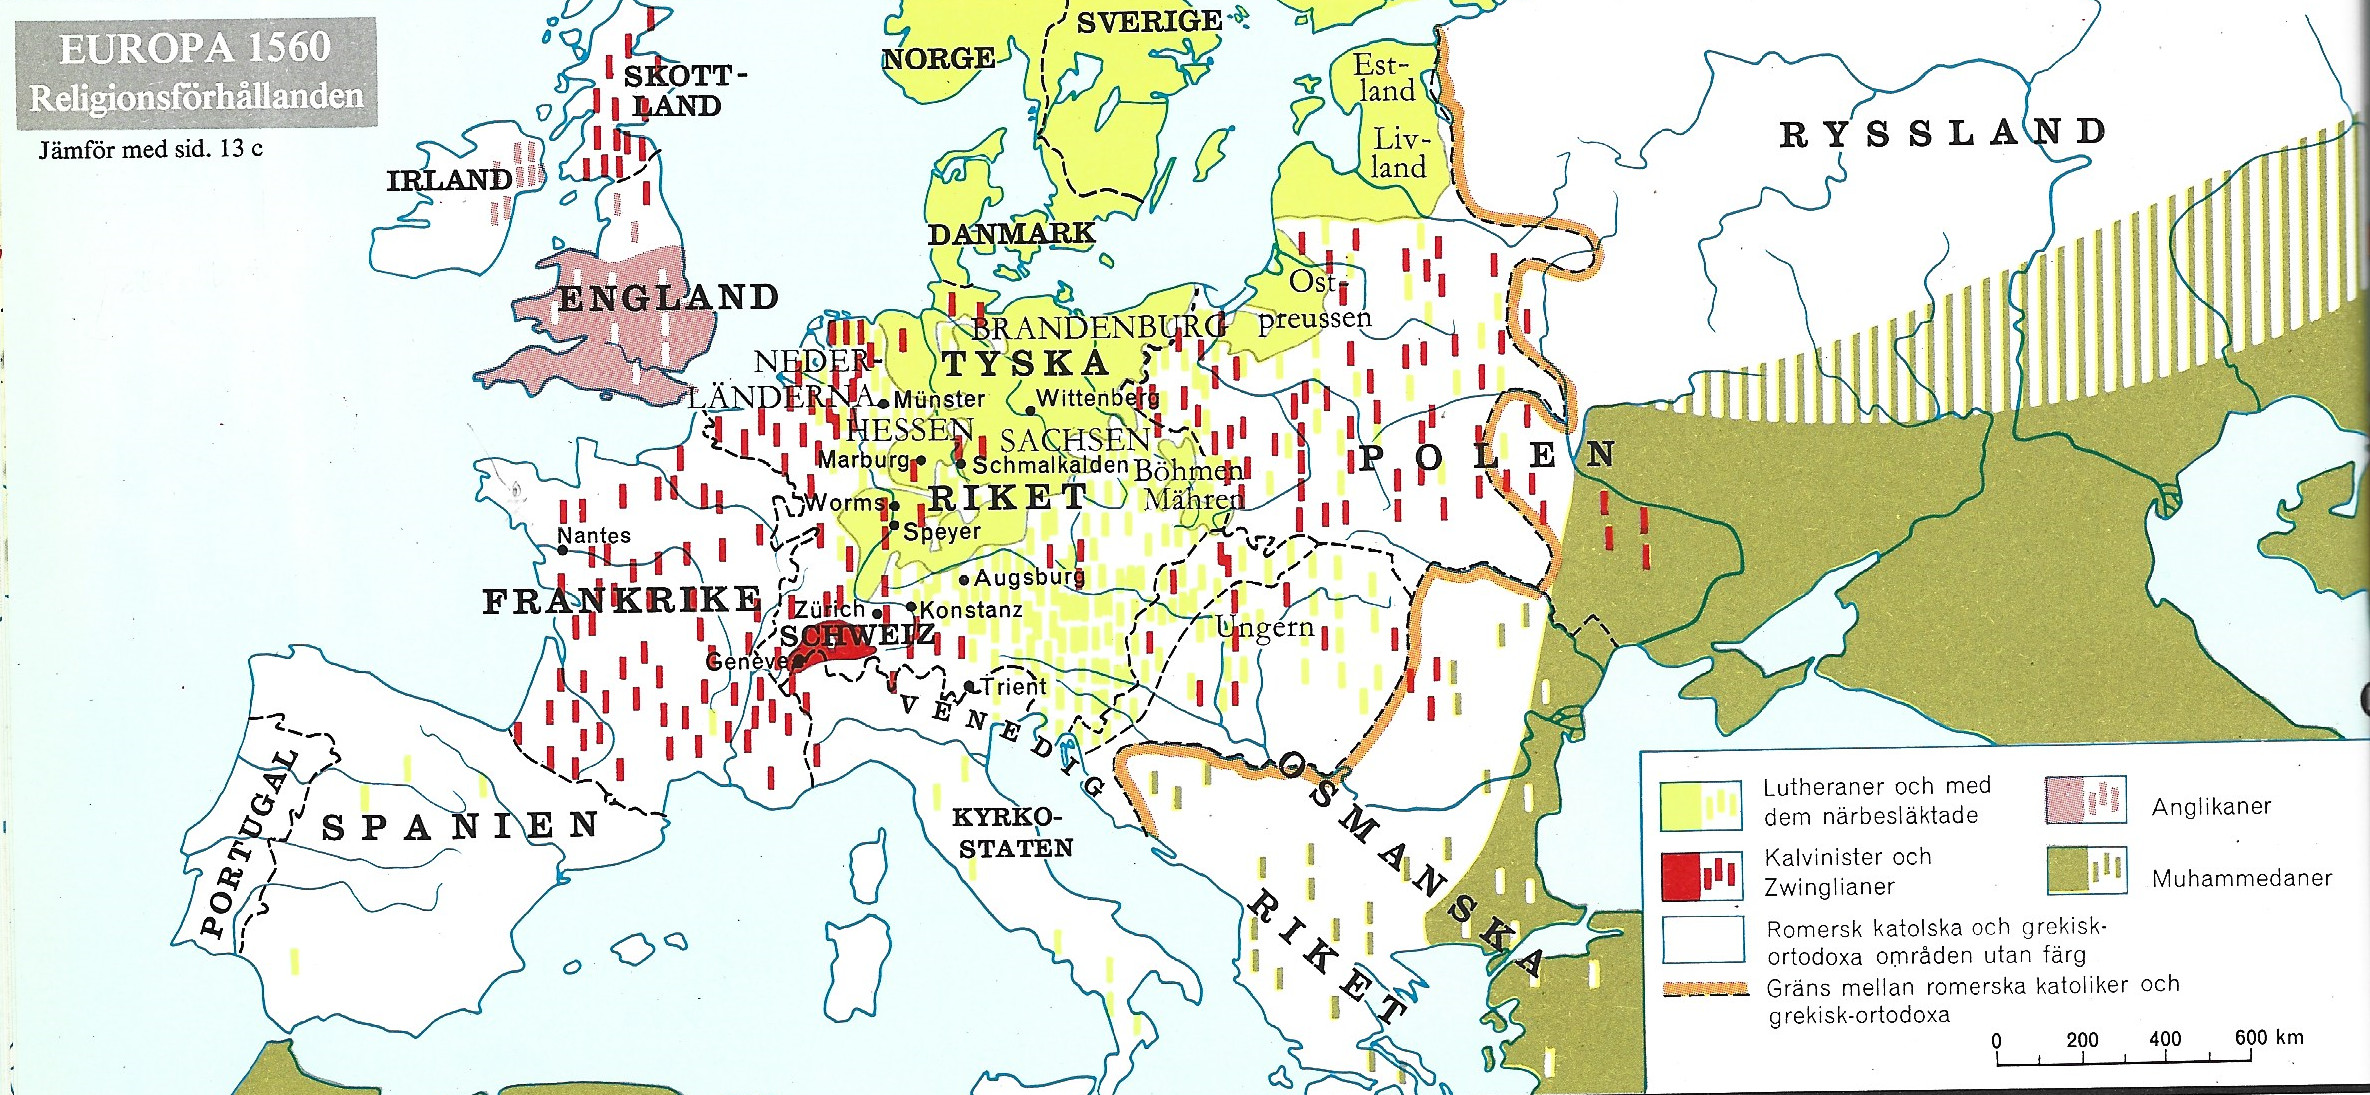 Europa 1560 religion